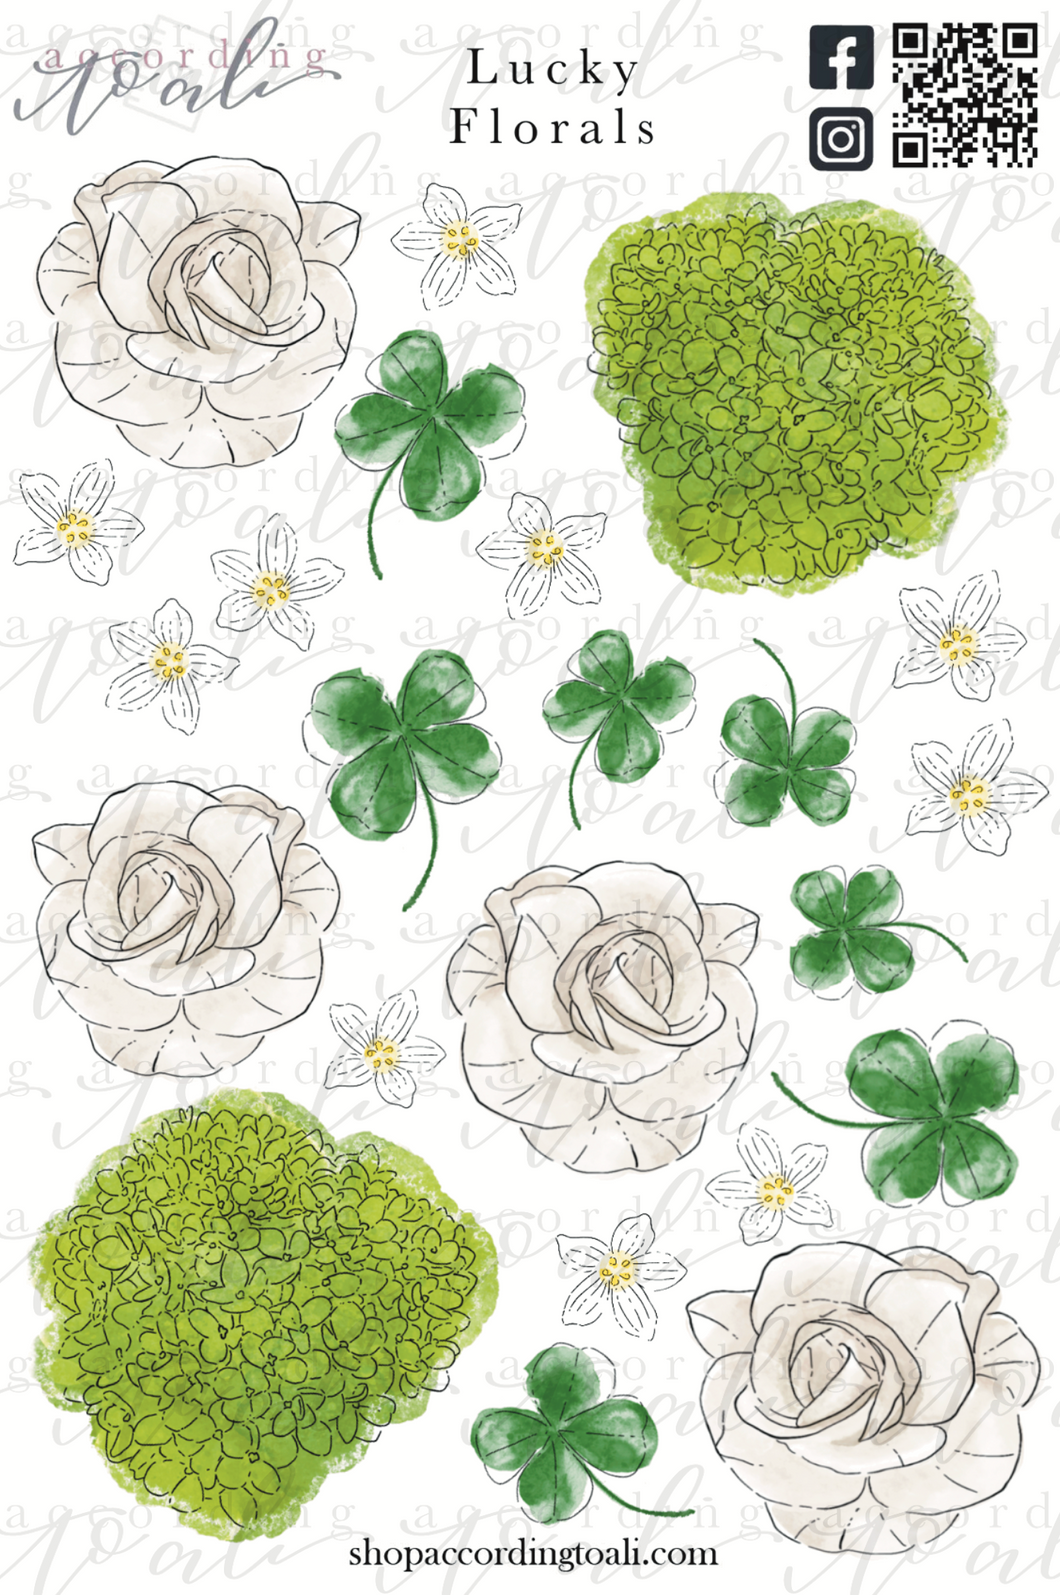 Lucky Florals Sticker Sheet